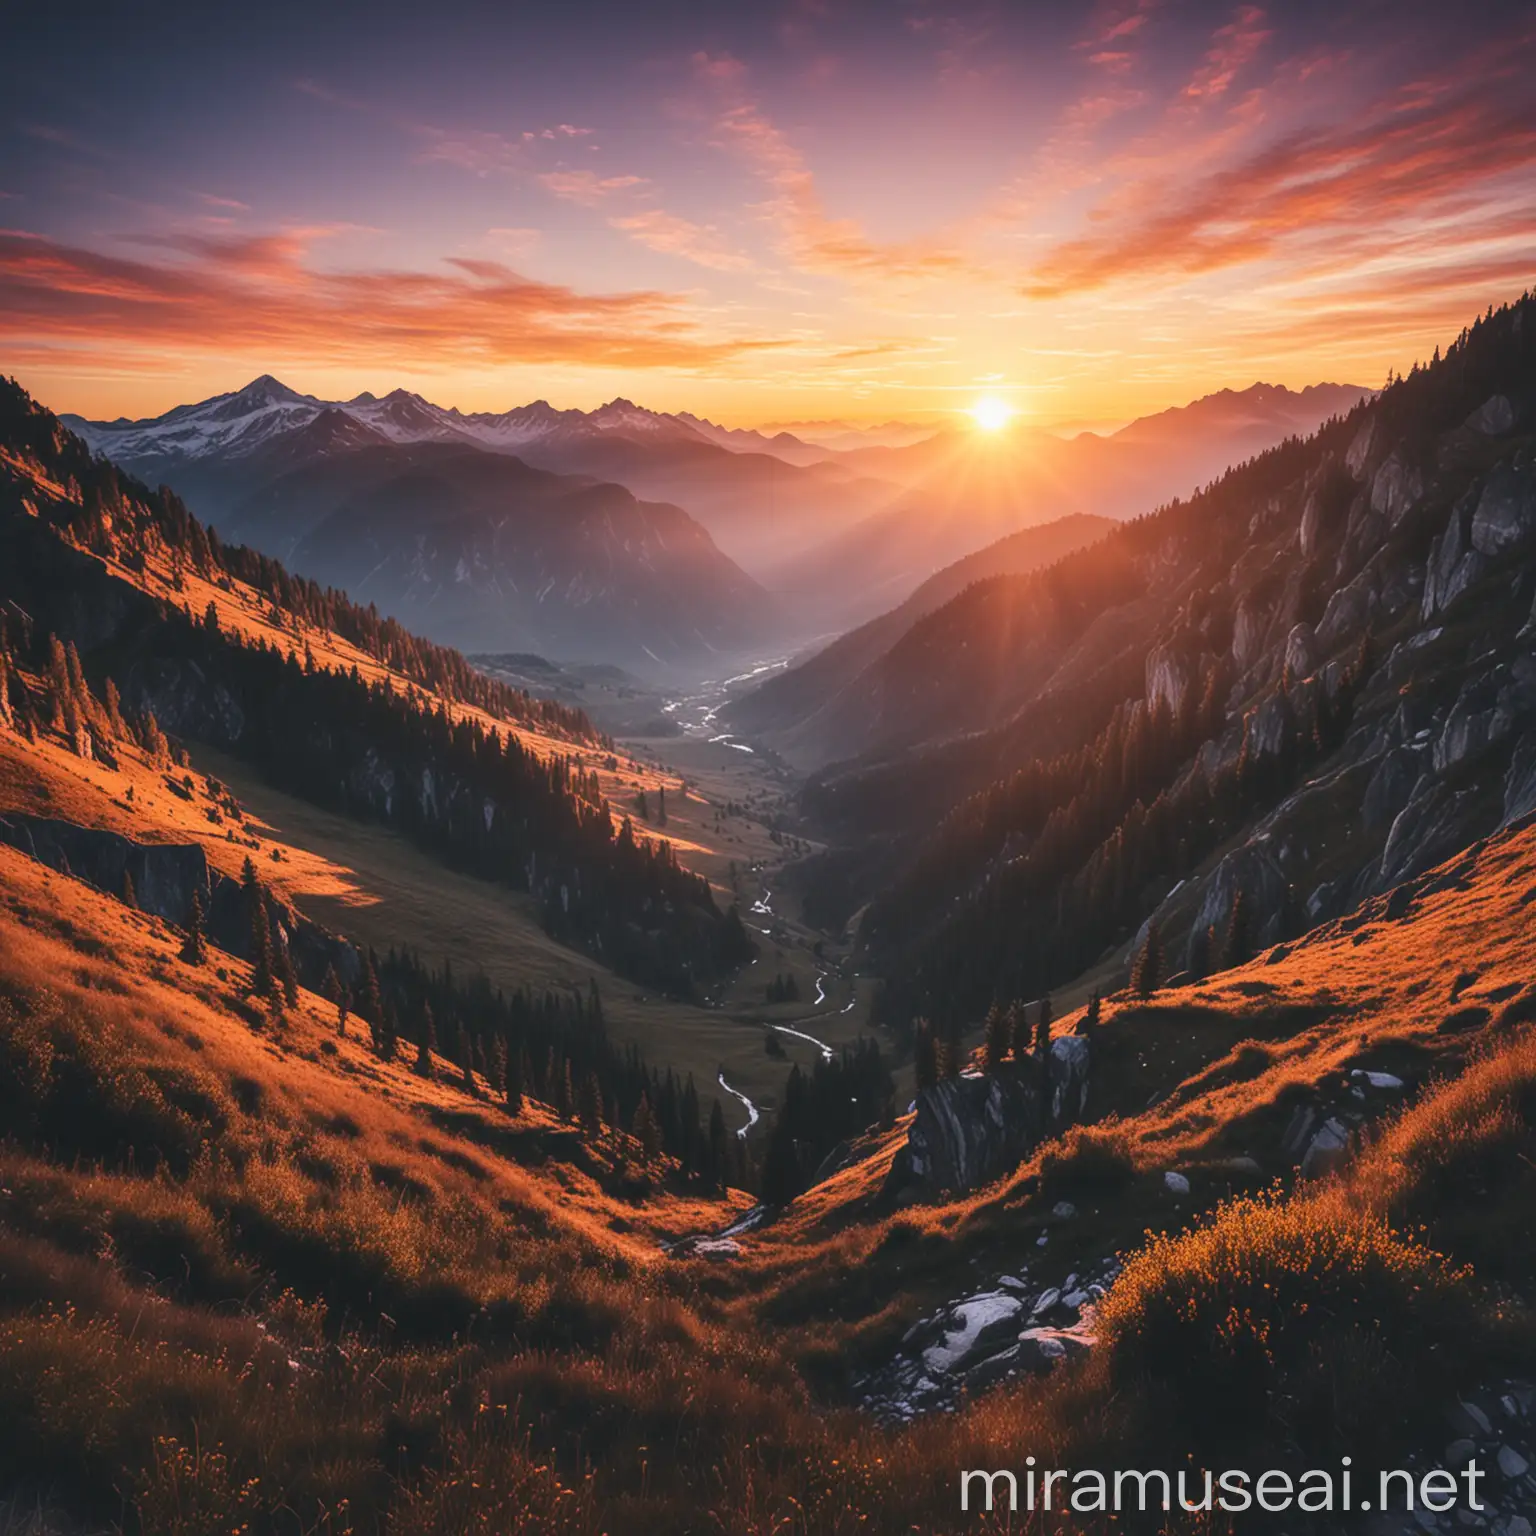 a beautiful sunrise over a majestic mountain landscape